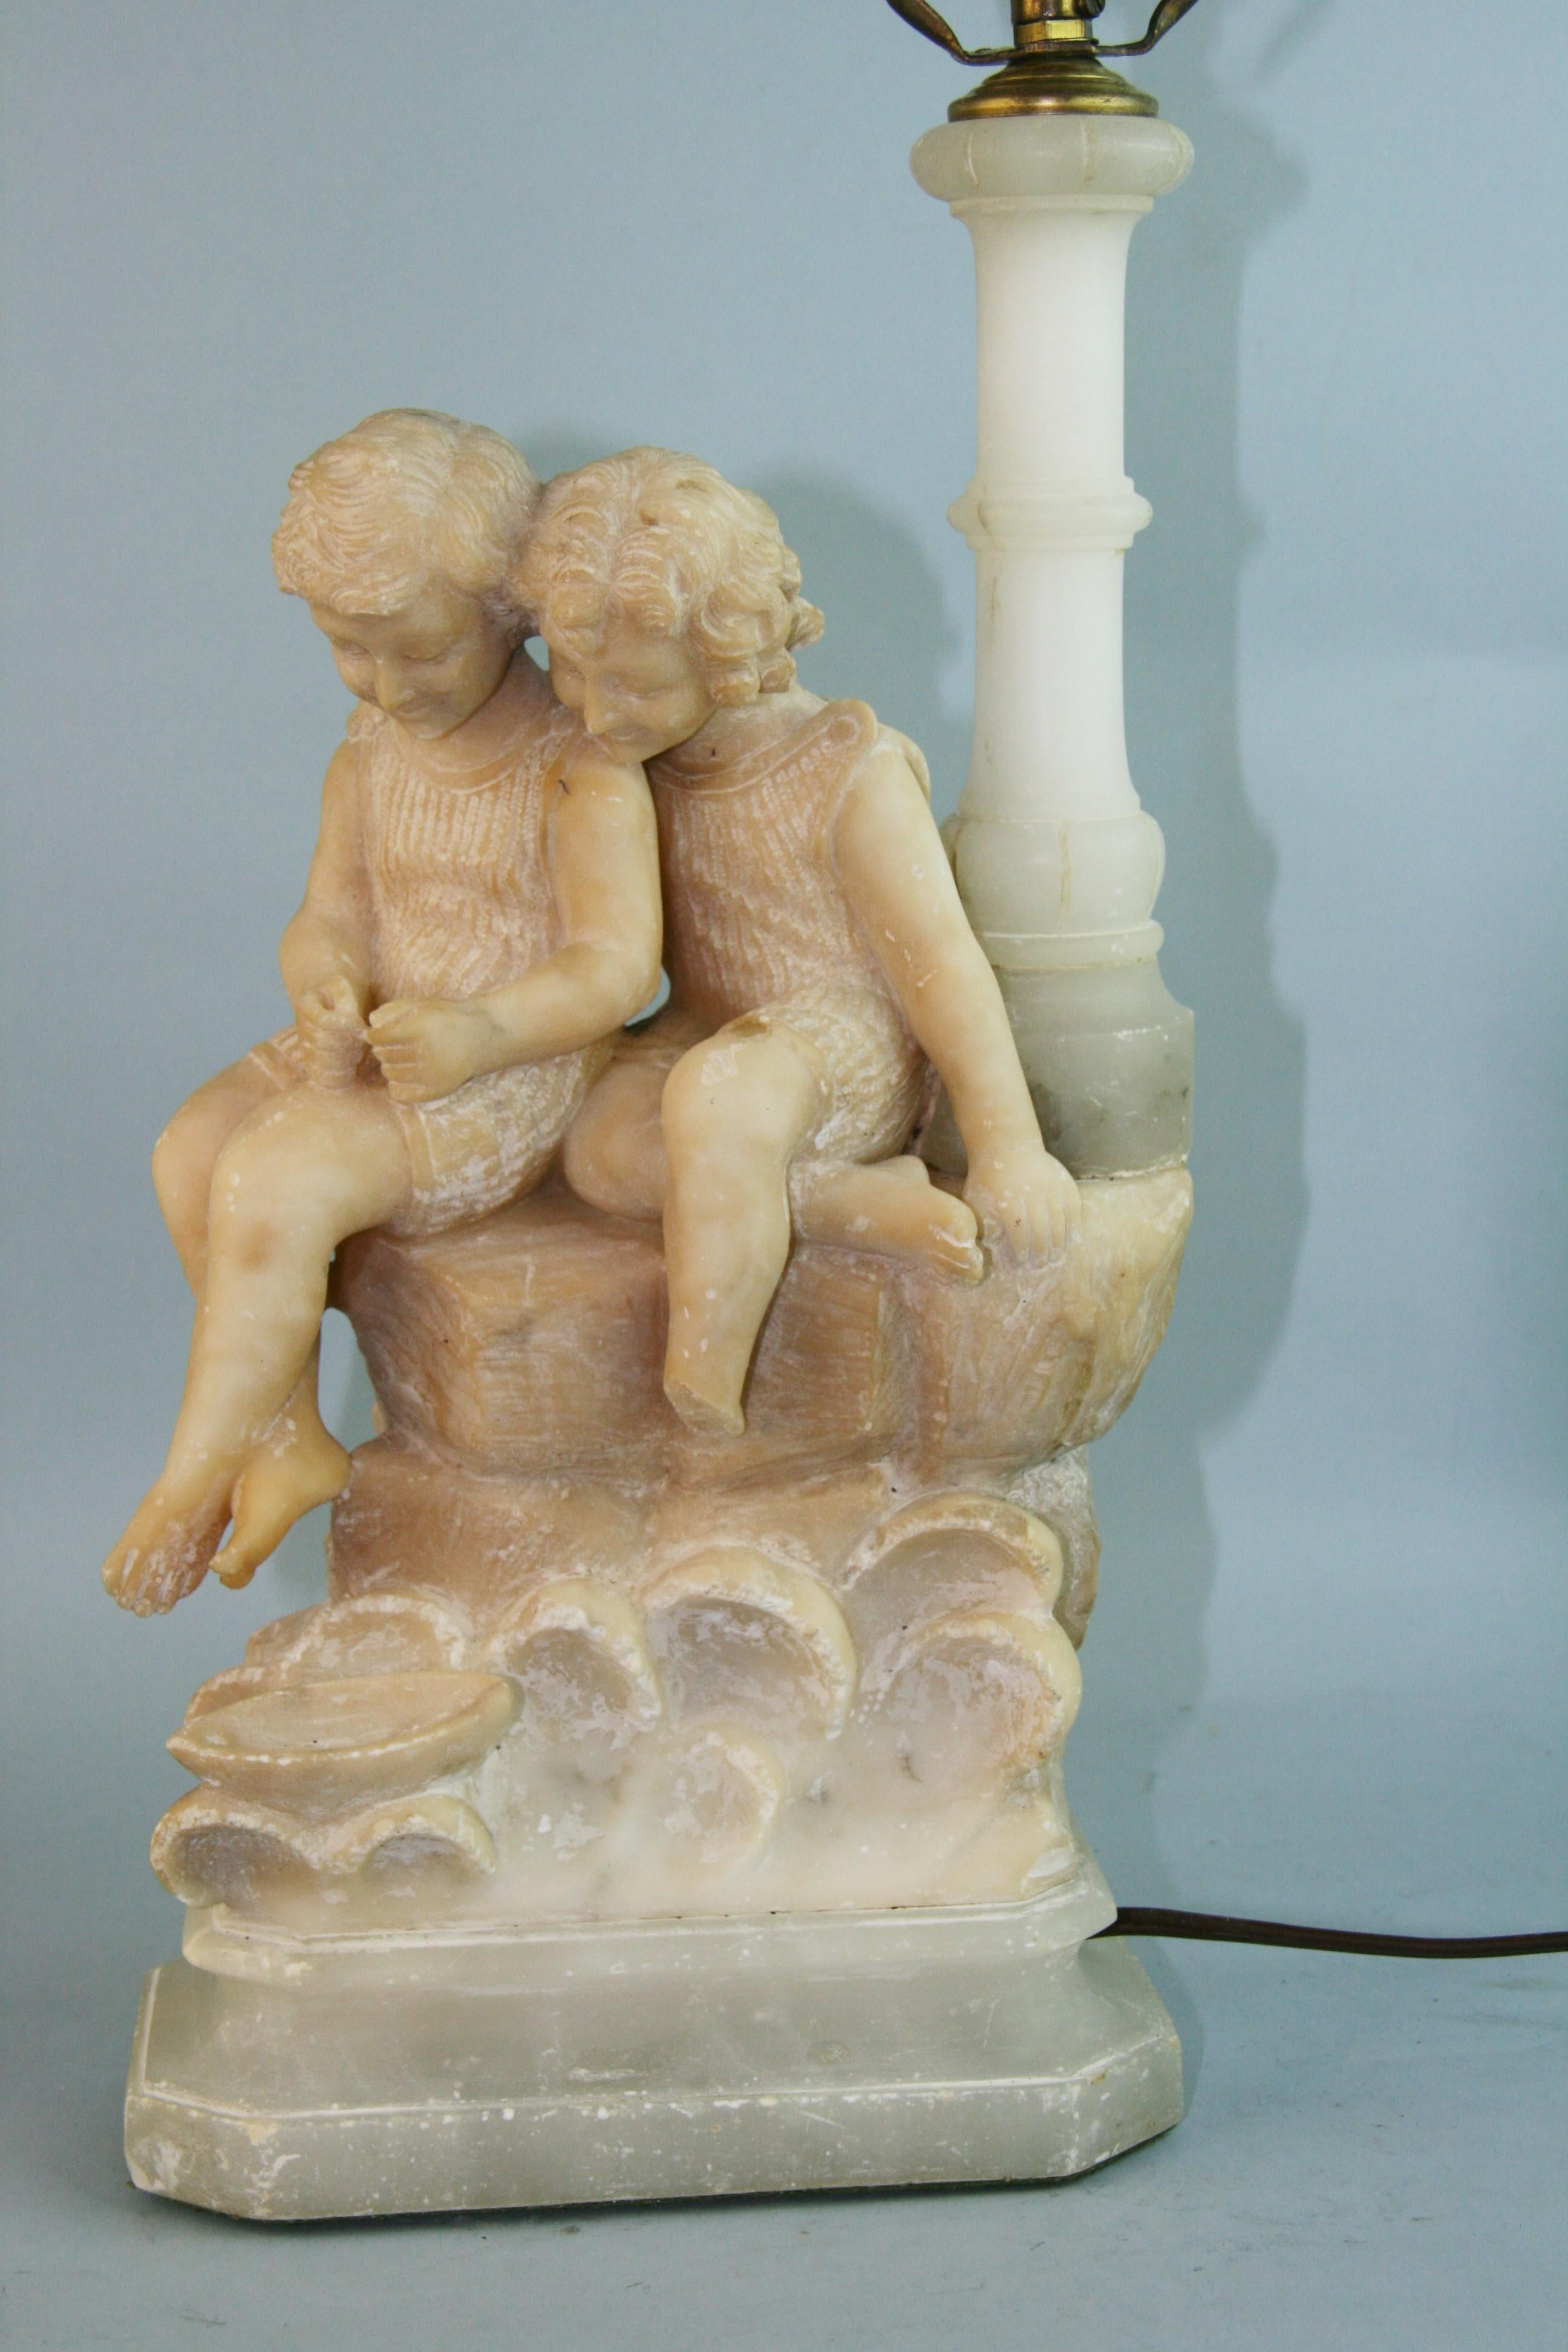 1169 Lampe sculpturale italienne en albâtre sculptée à la main représentant deux enfants
Câblage existant en état de fonctionnement
Mesures : Hauteur 17